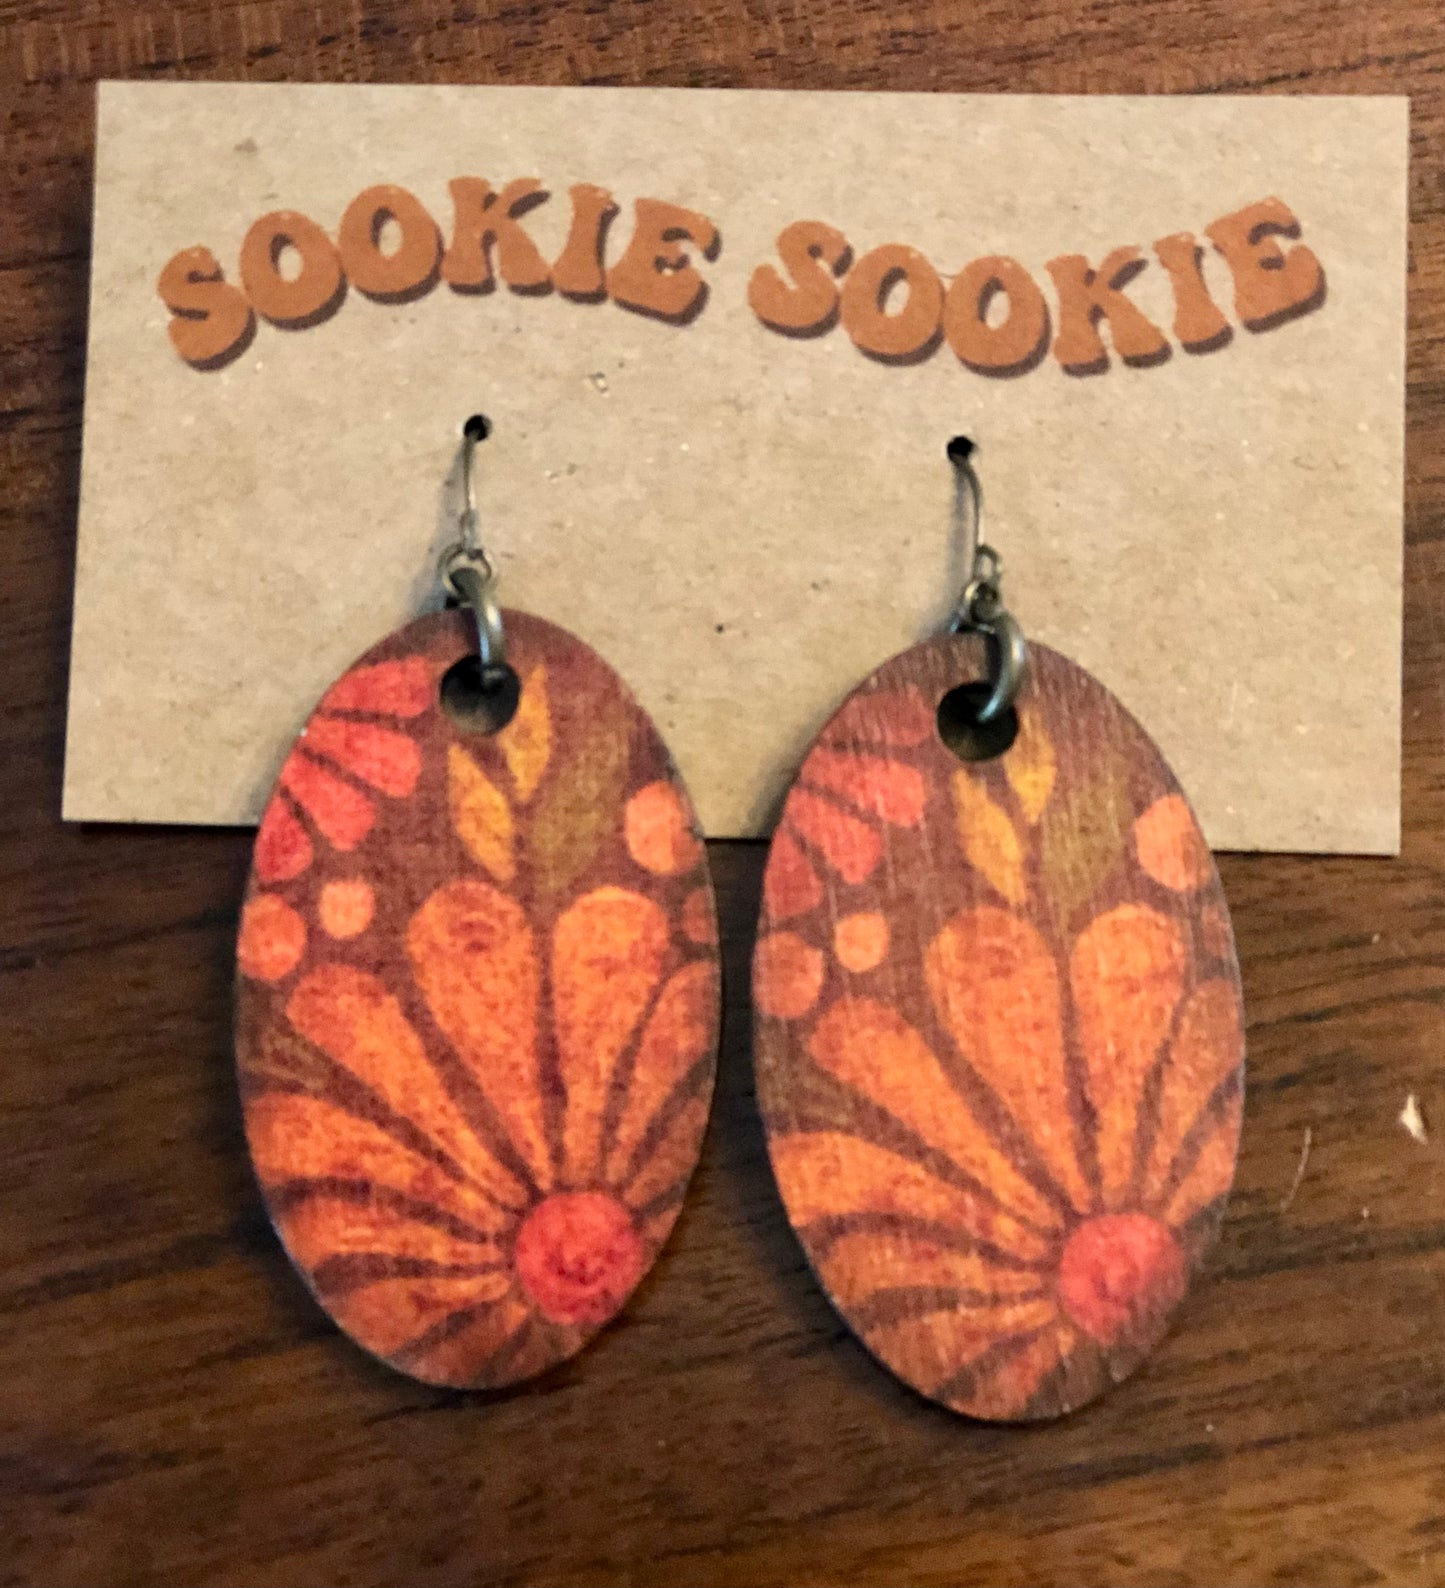 Sookie Sookie mini Flora earrings